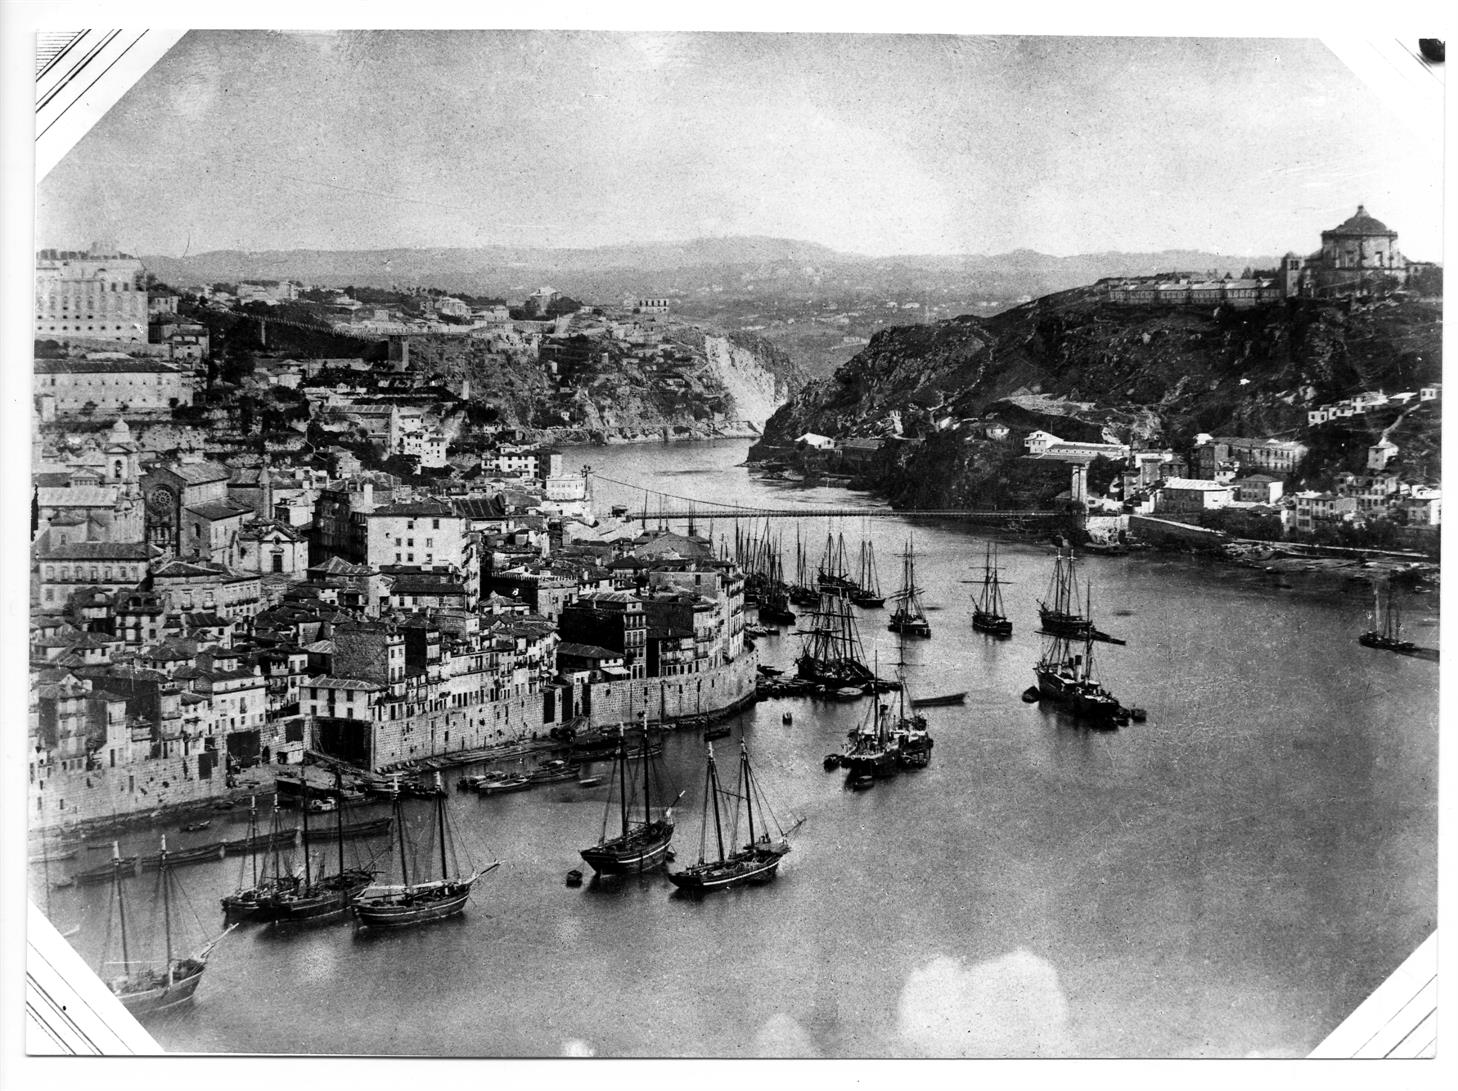 Porto - Gaia : as travessias do Rio Douro : ponte Pênsil